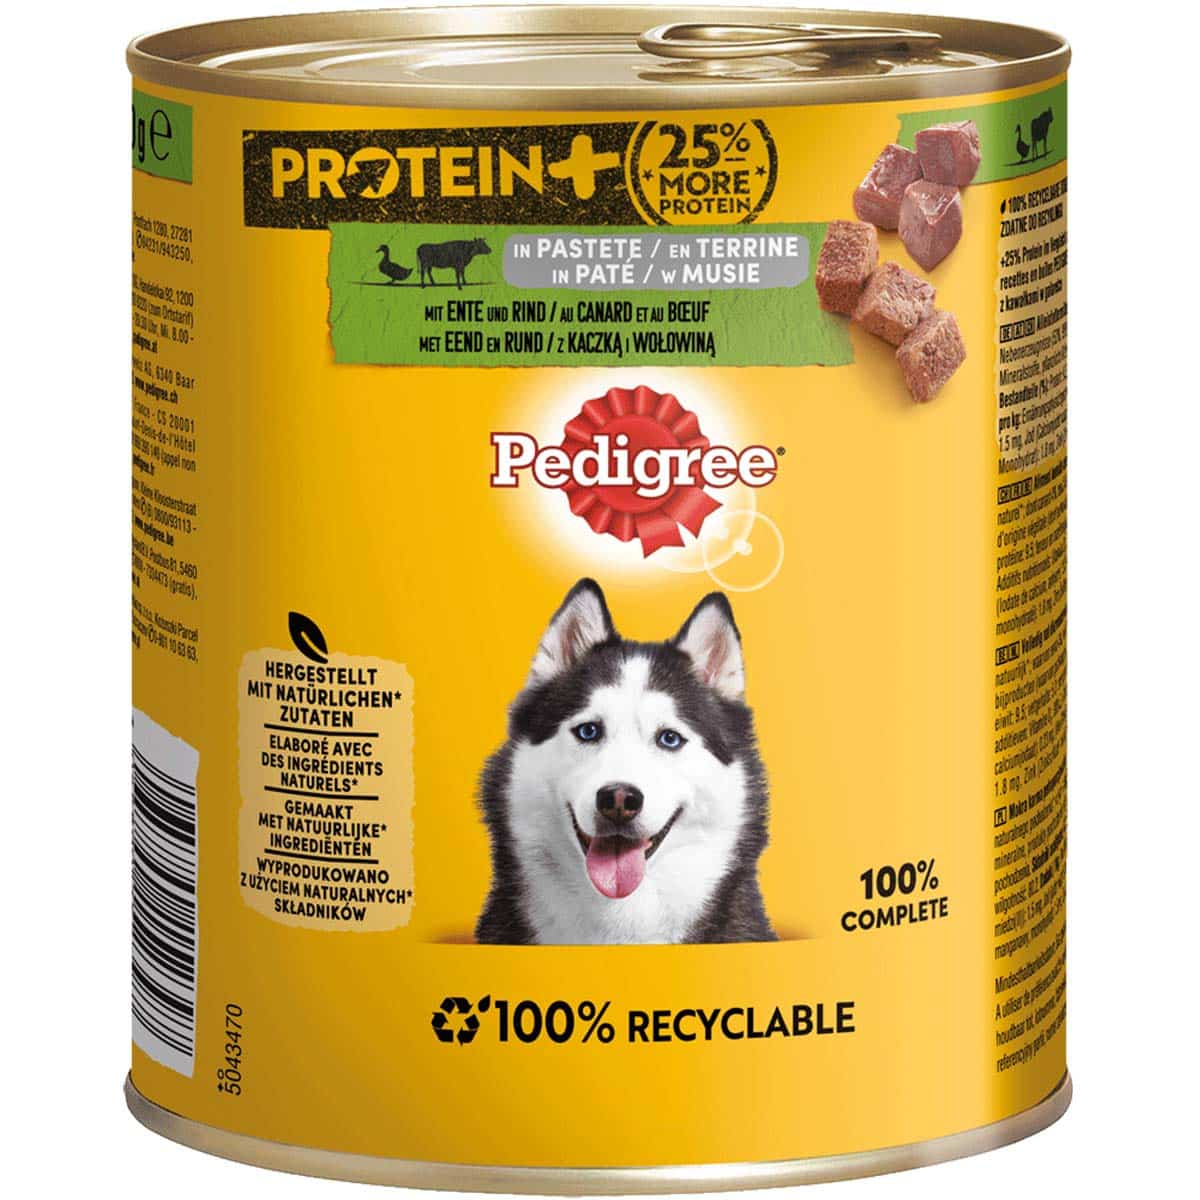 PEDIGREE Protein+ Pastete Ente & Rind 12x800g